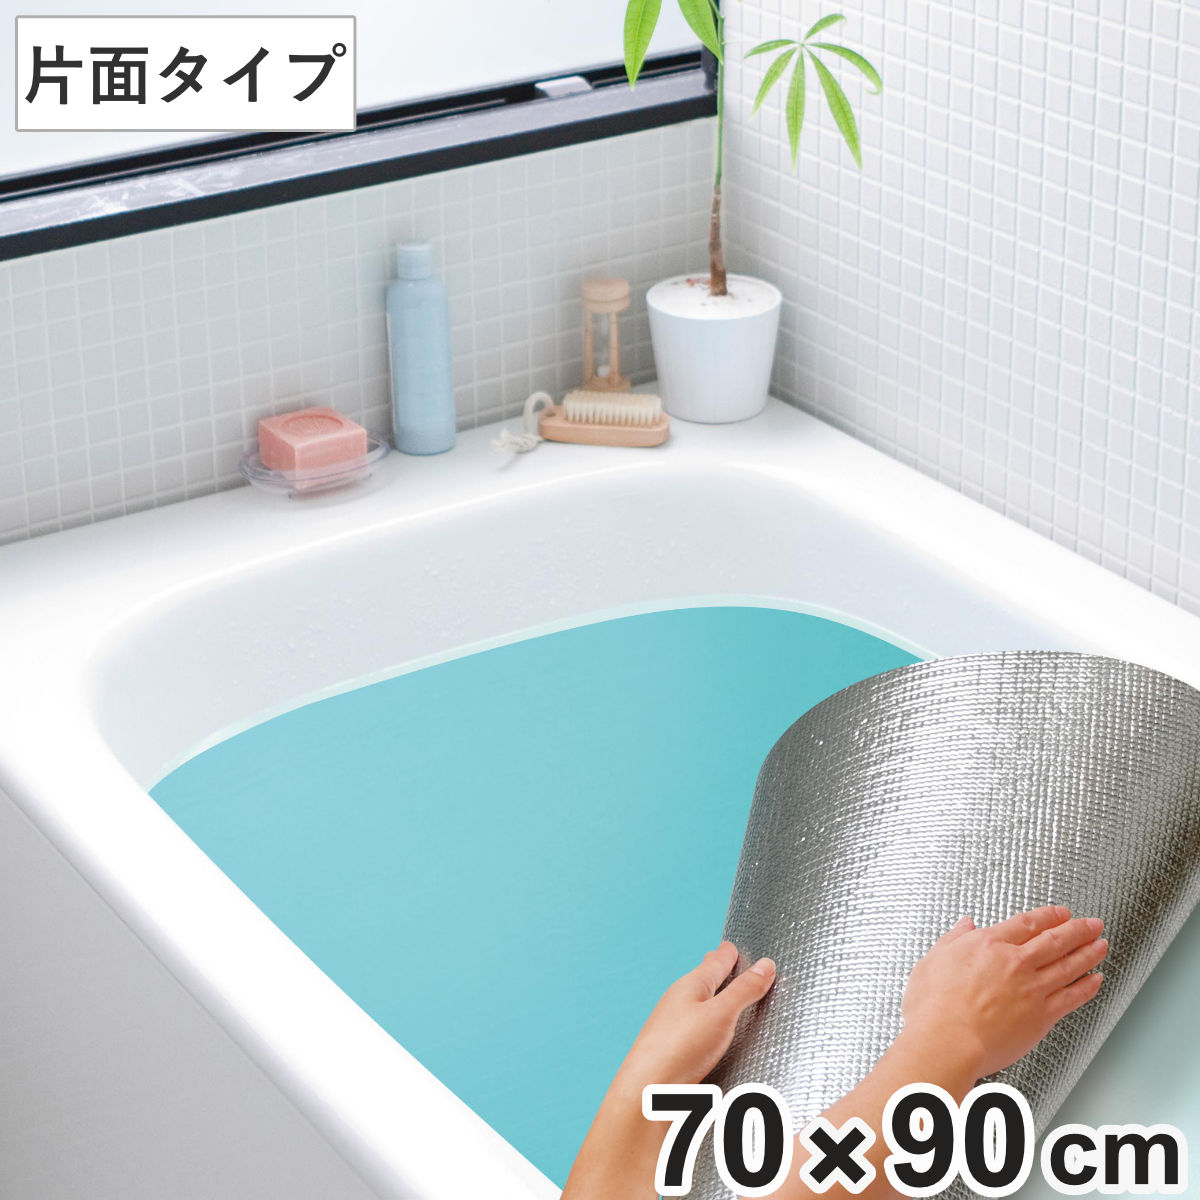 お風呂のアルミ 保温シート ワイズ 風呂ふた併用可 〔浴槽 風呂桶 バス